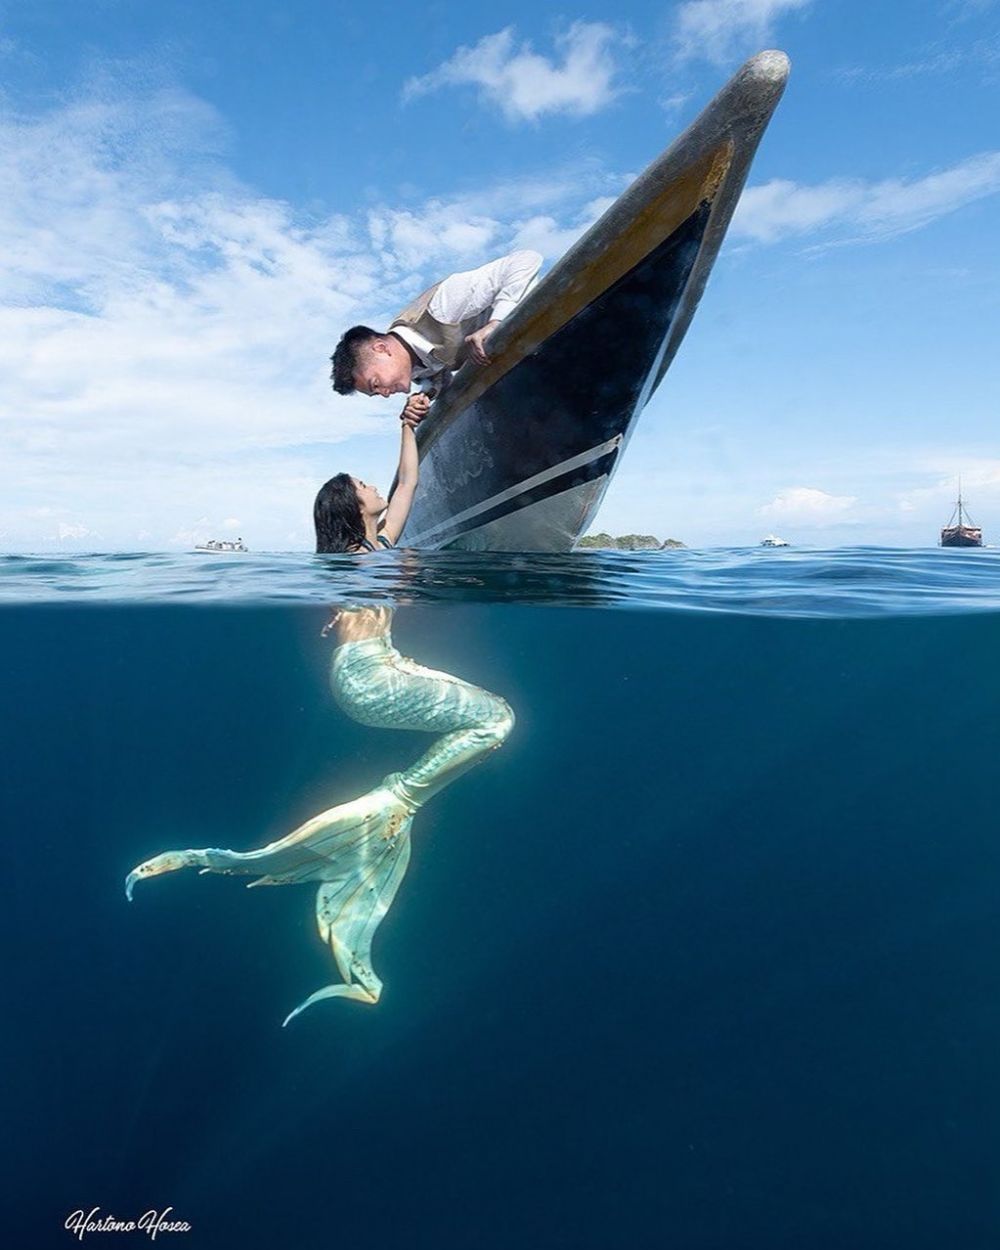 Unggah foto ala mermaid di drama Korea, Boy William banjir pujian